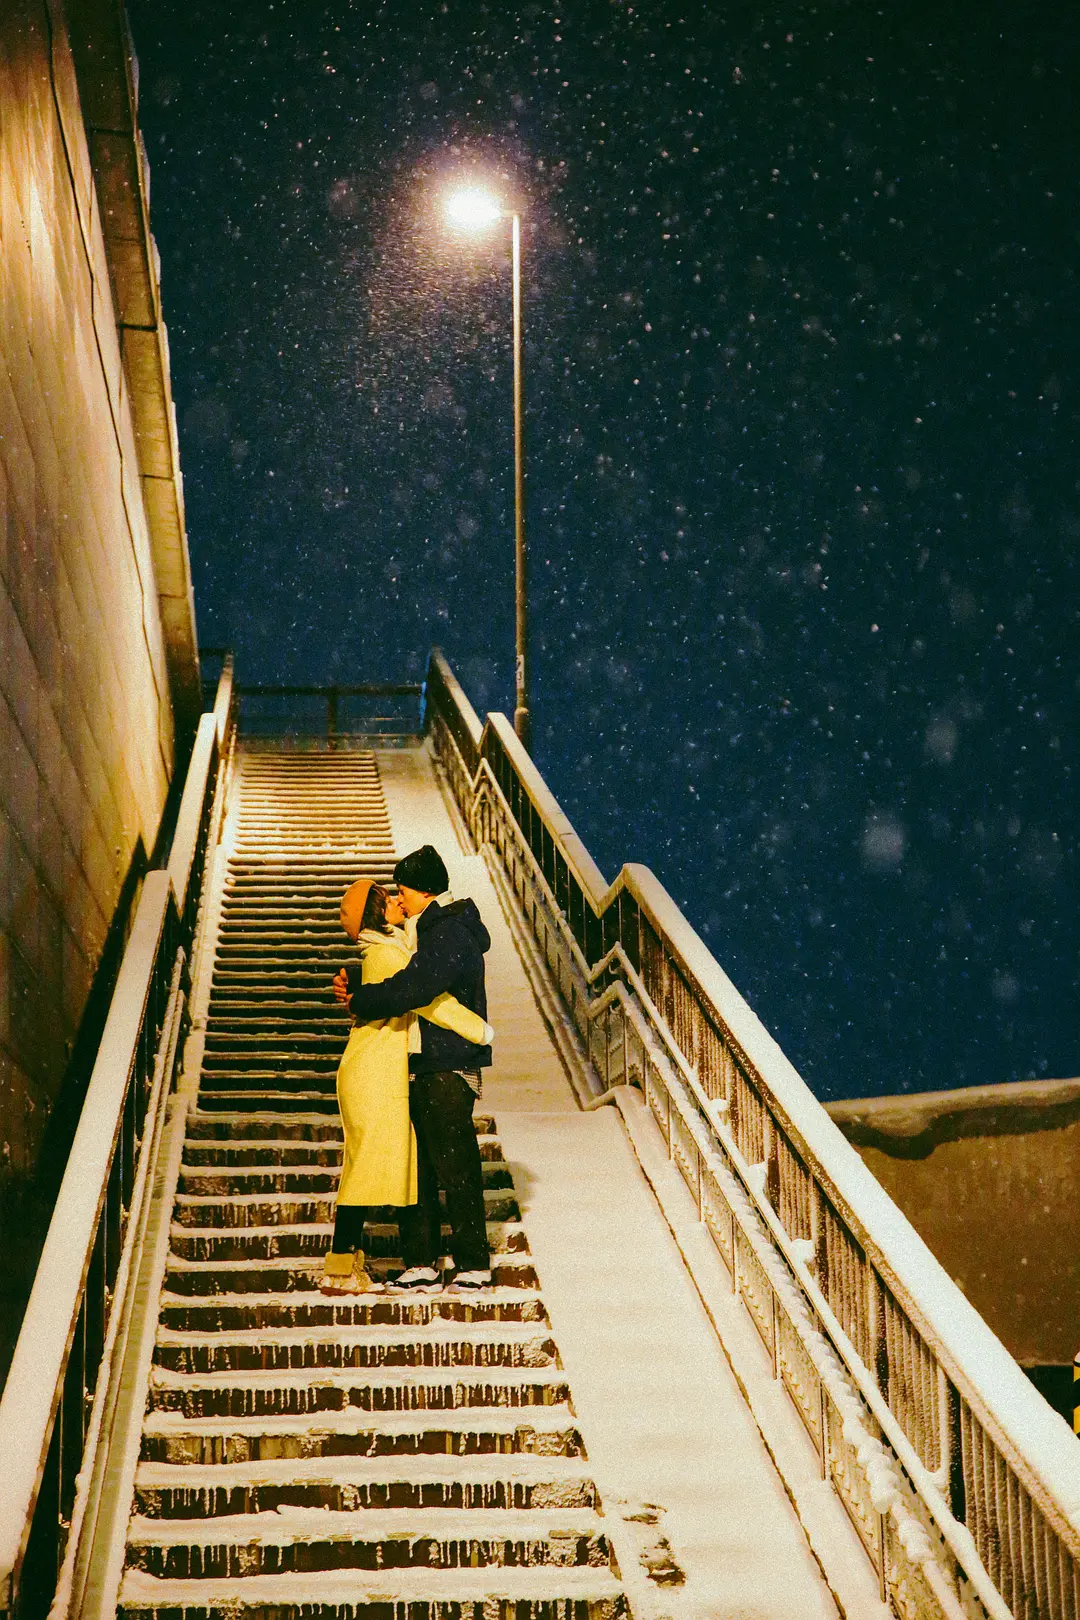 两个人雪景图片唯美图片